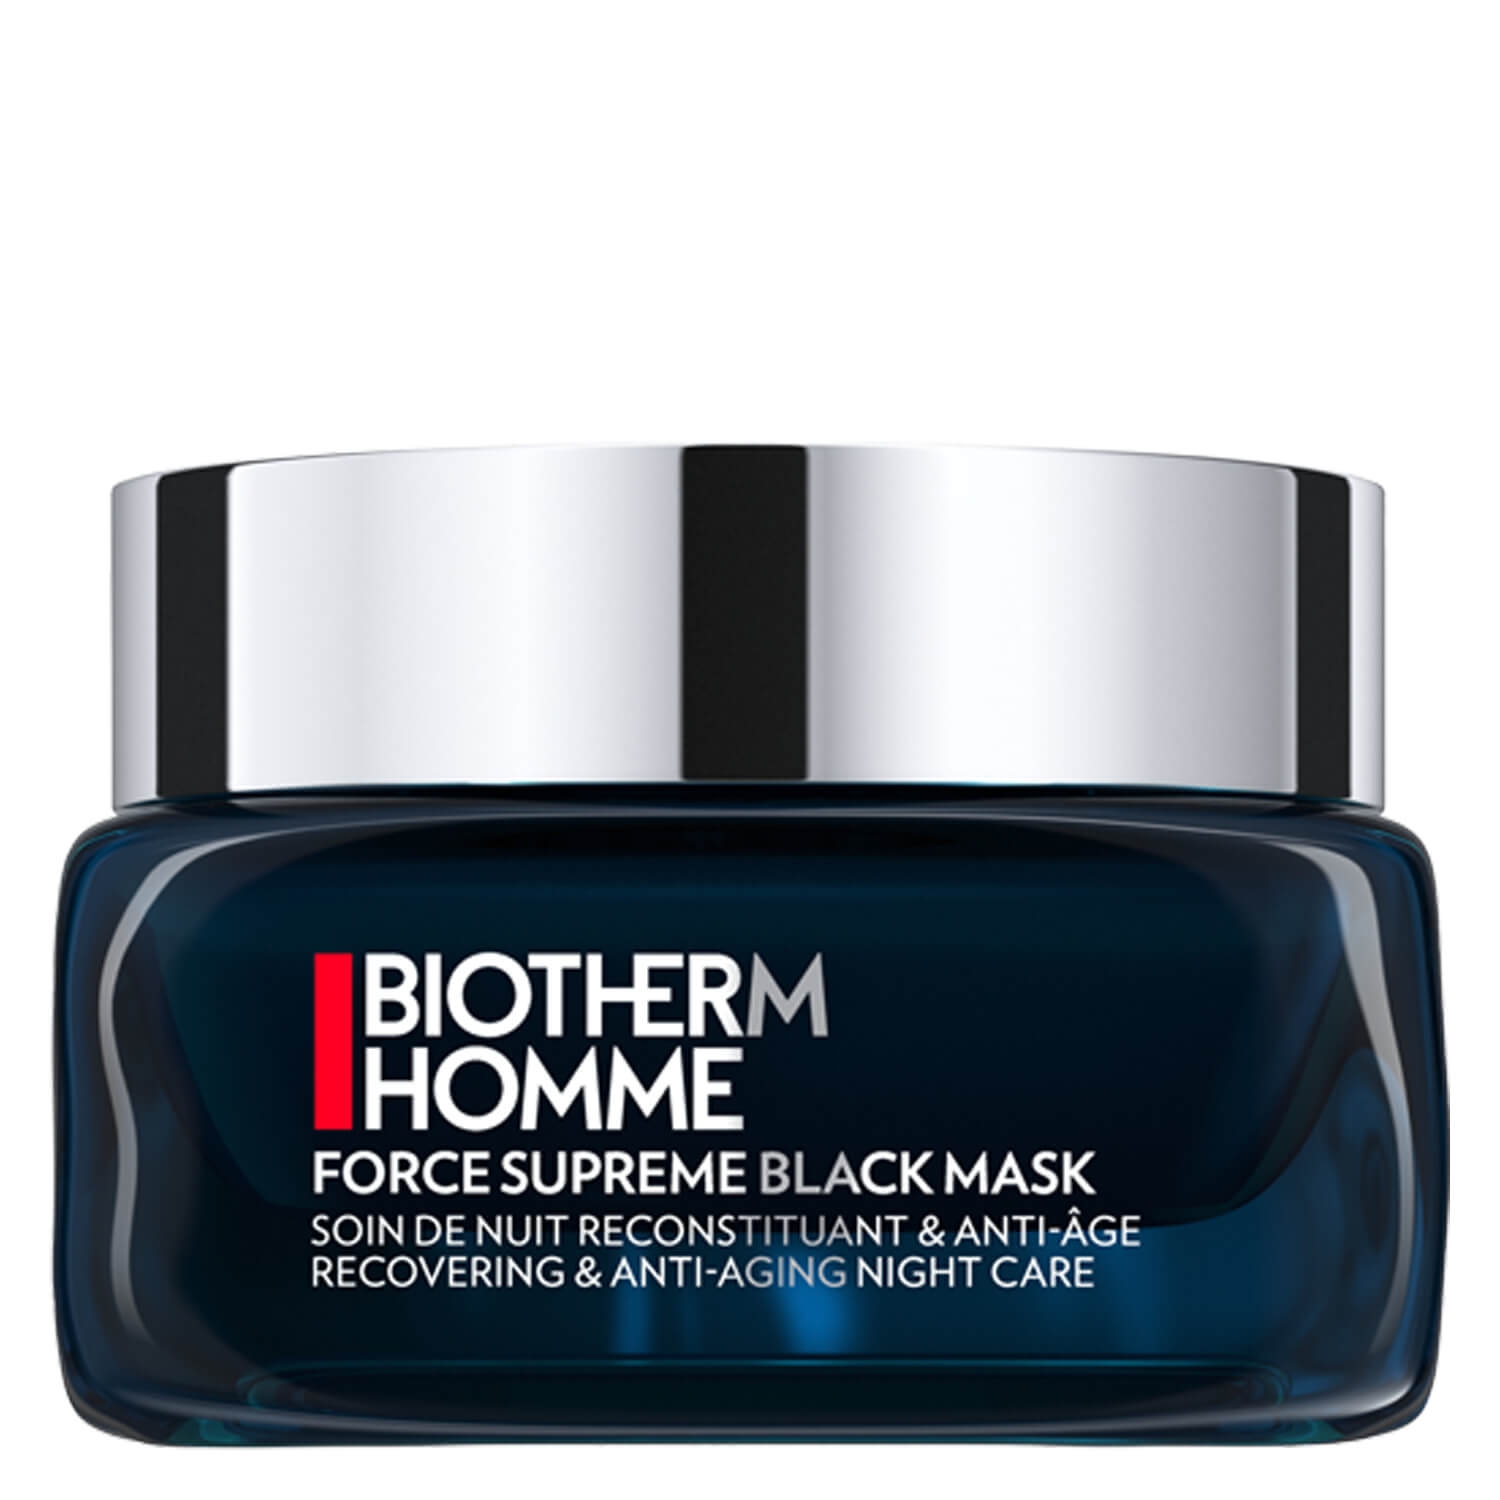 Produktbild von Biotherm Homme - Force Supreme Black Mask